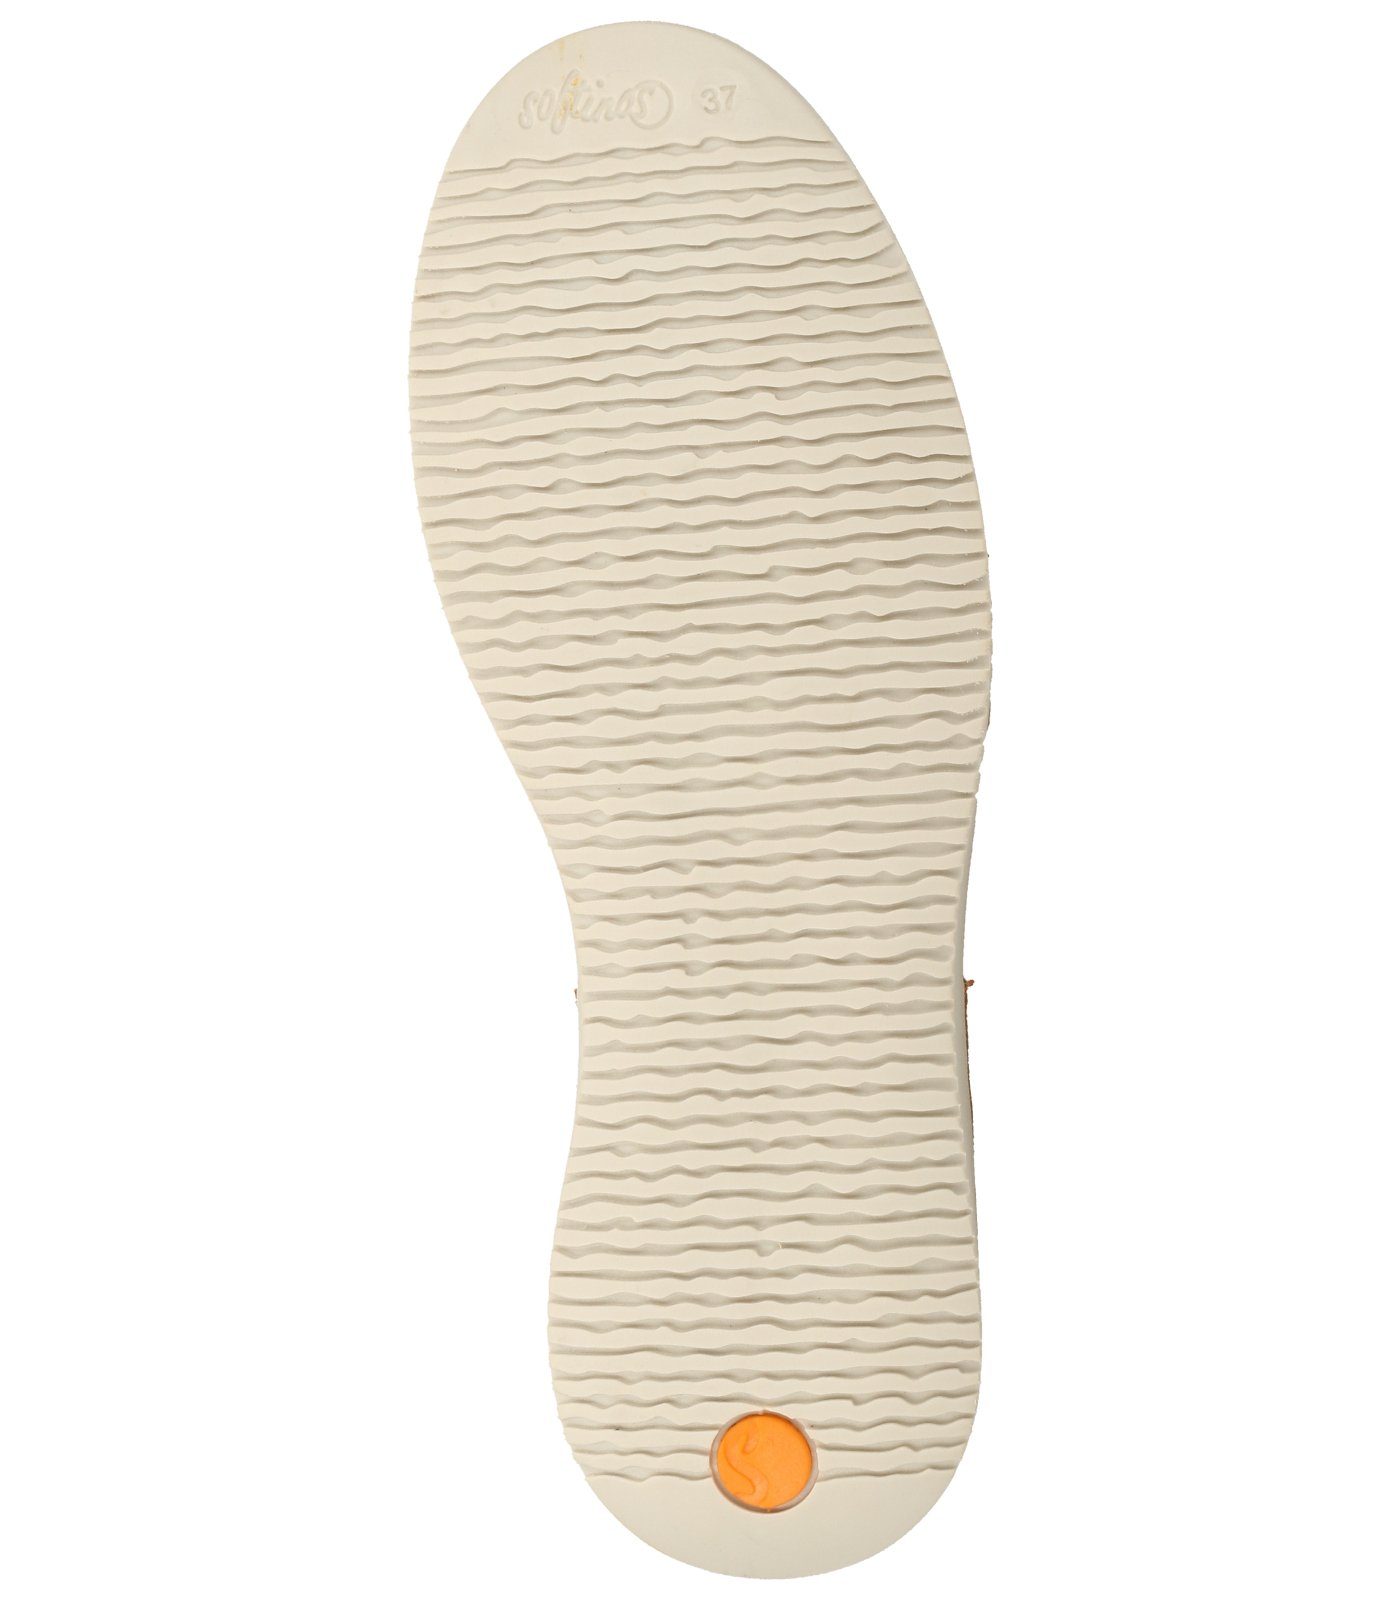 Riemchensandalette Orange softinos Leder/Textil Sandalen